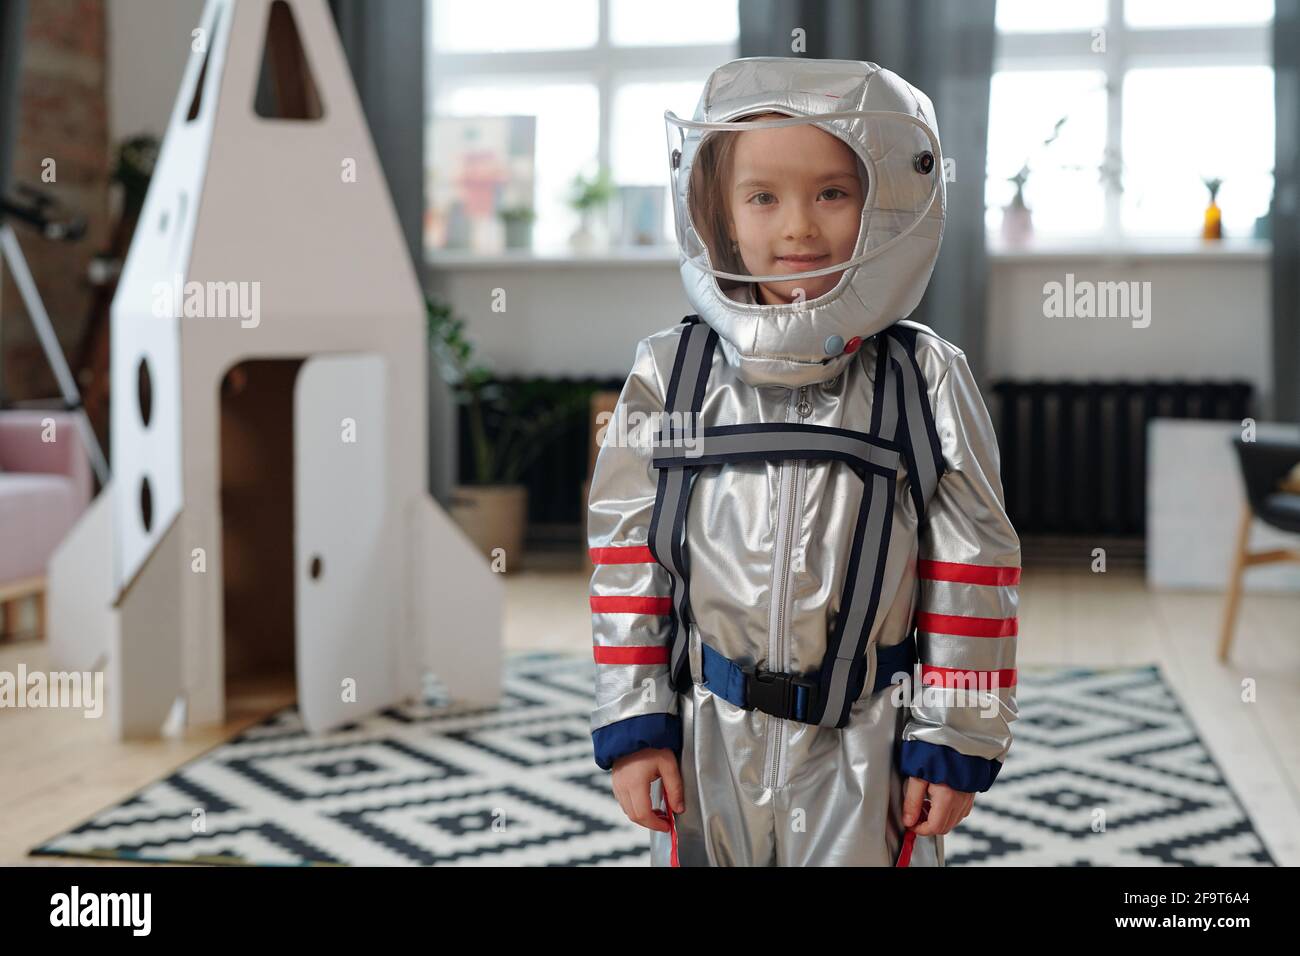 Porträt eines kleinen Mädchens im Astronautenkostüm, das vor der Kamera lächelt Während des Spielens im Raum Stockfoto